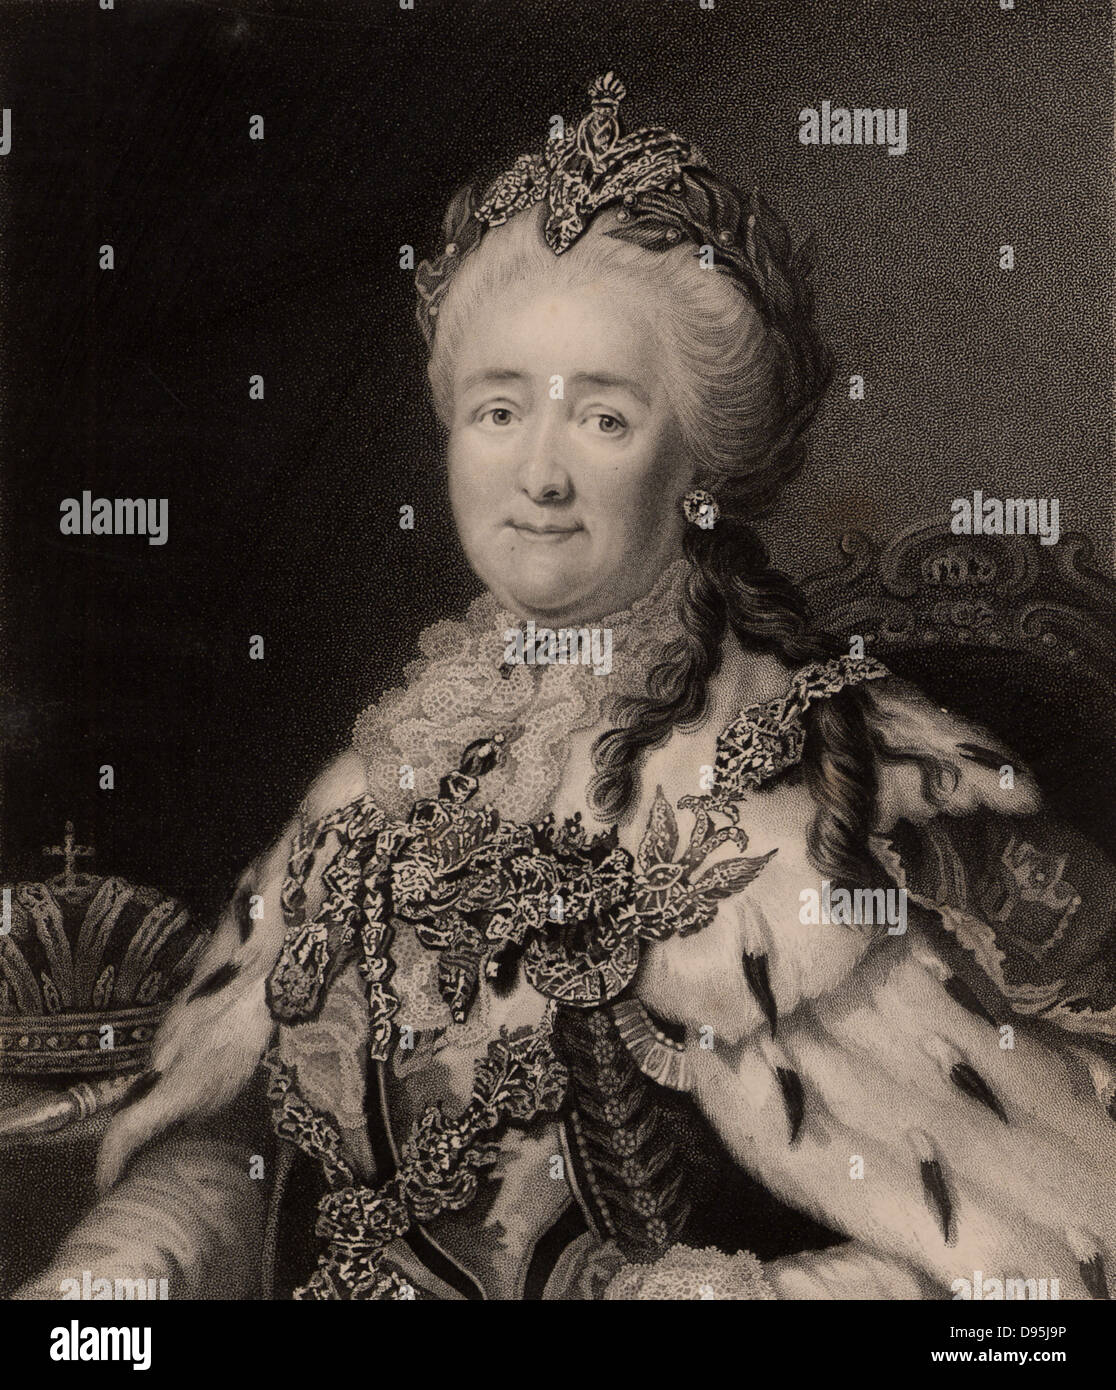 Katharina II., der Große (1729-1796), Kaiserin von Russland. Von "die Galerie von Porträts, Vol. VII, von Charles Knight (London, 1837). Gravur. Stockfoto